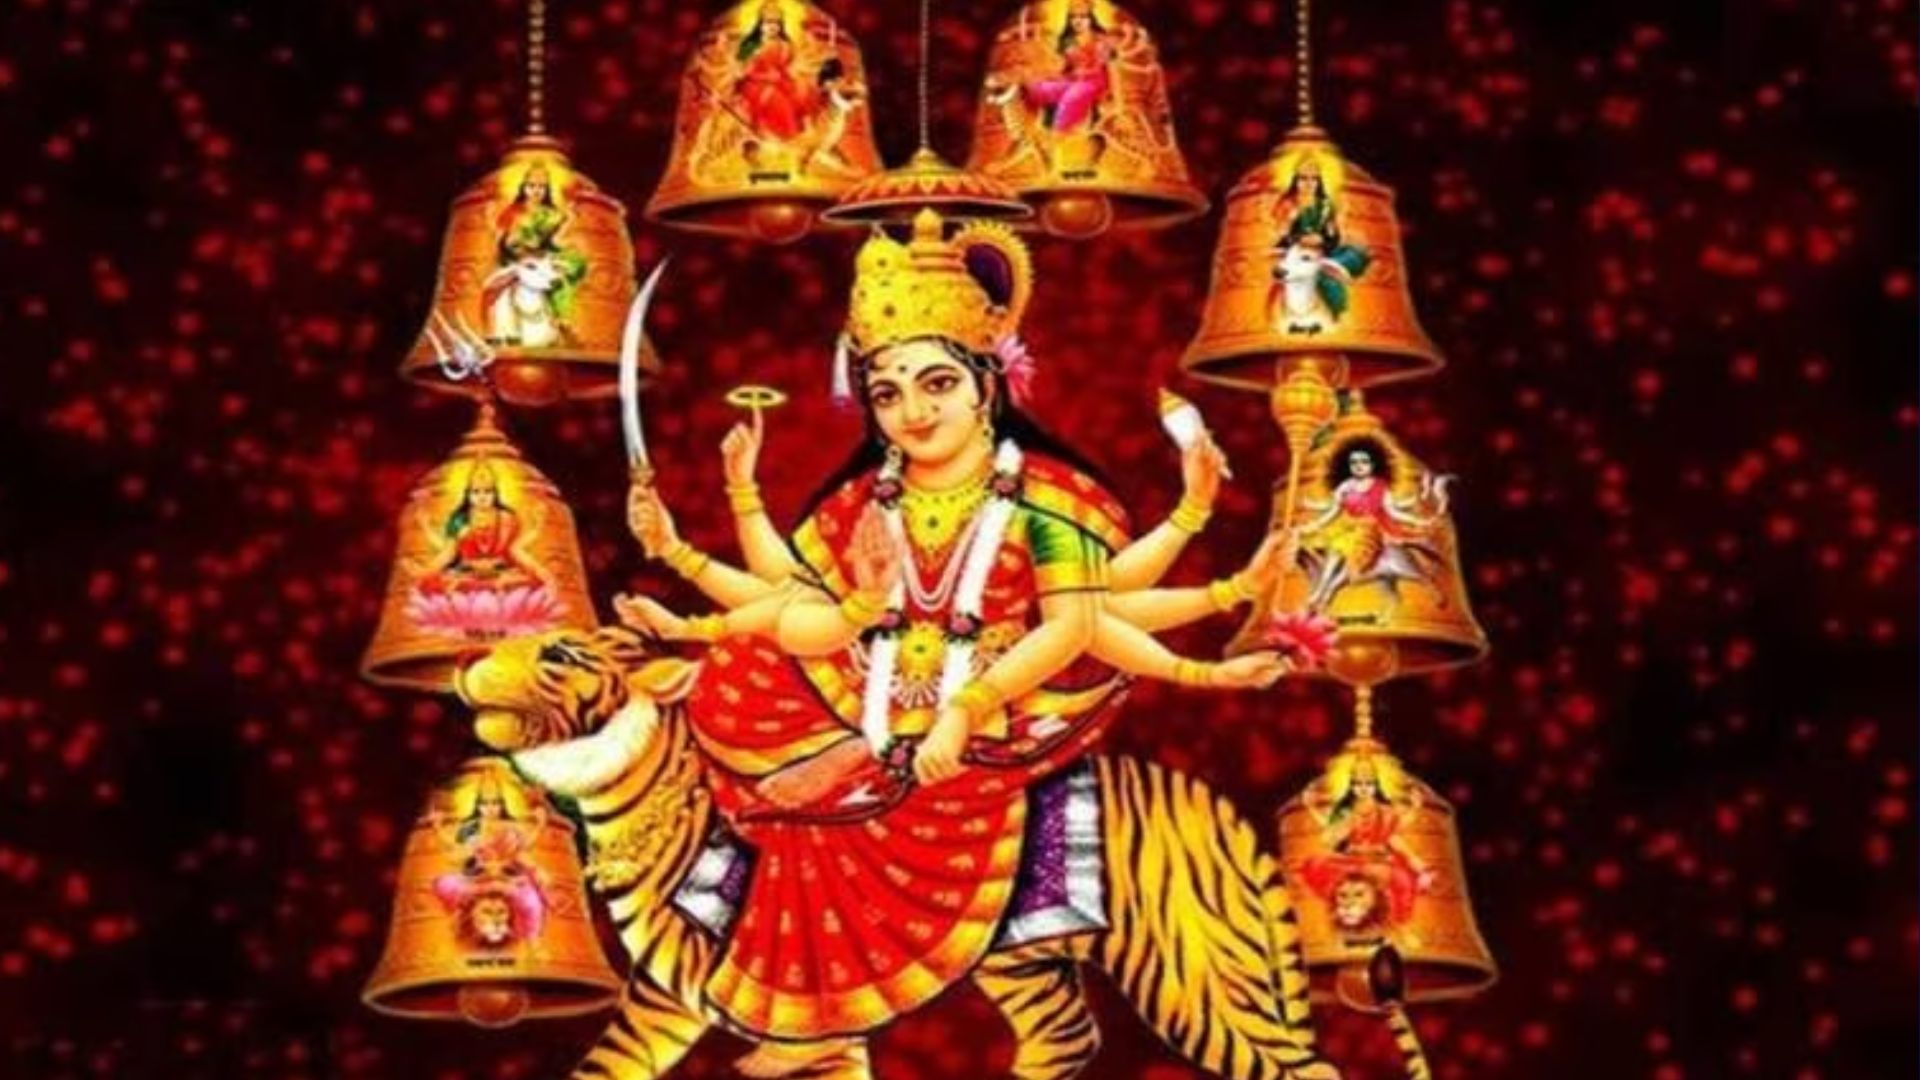 बरेली : चैत्र नवरात्रि के पहले दिन करें ये काम, घर में आएगी सुख-समृद्धि और बनेंगे बिगड़े काम 